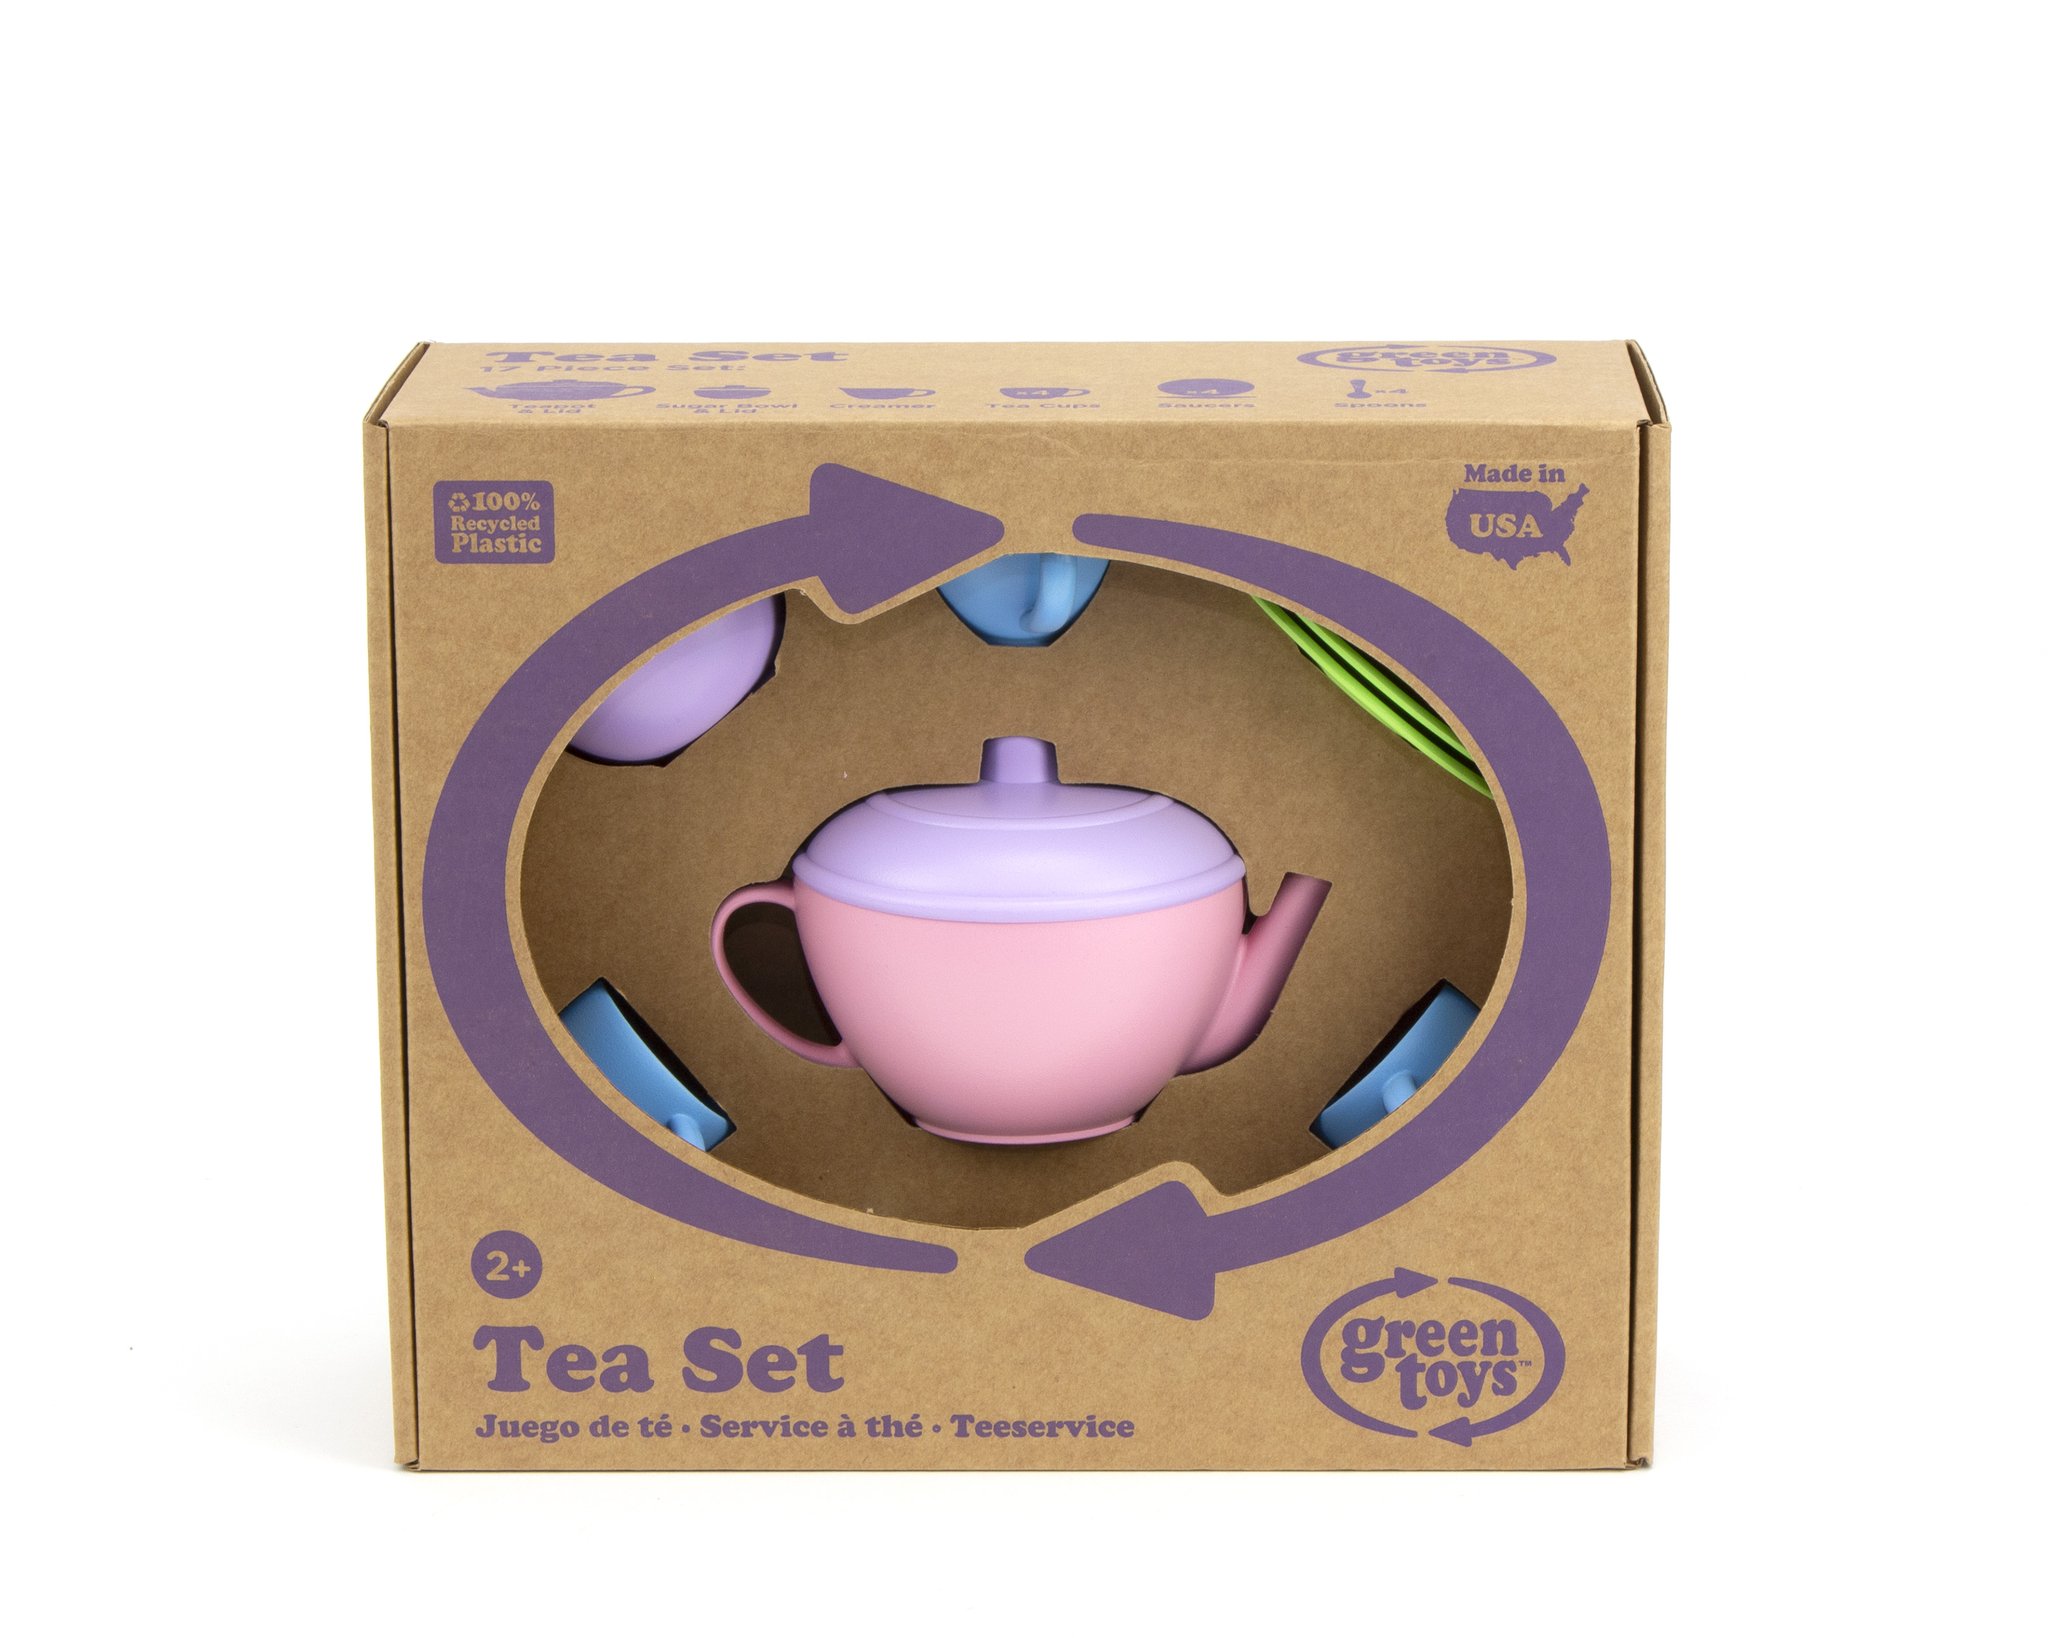 Tea set pink teapot